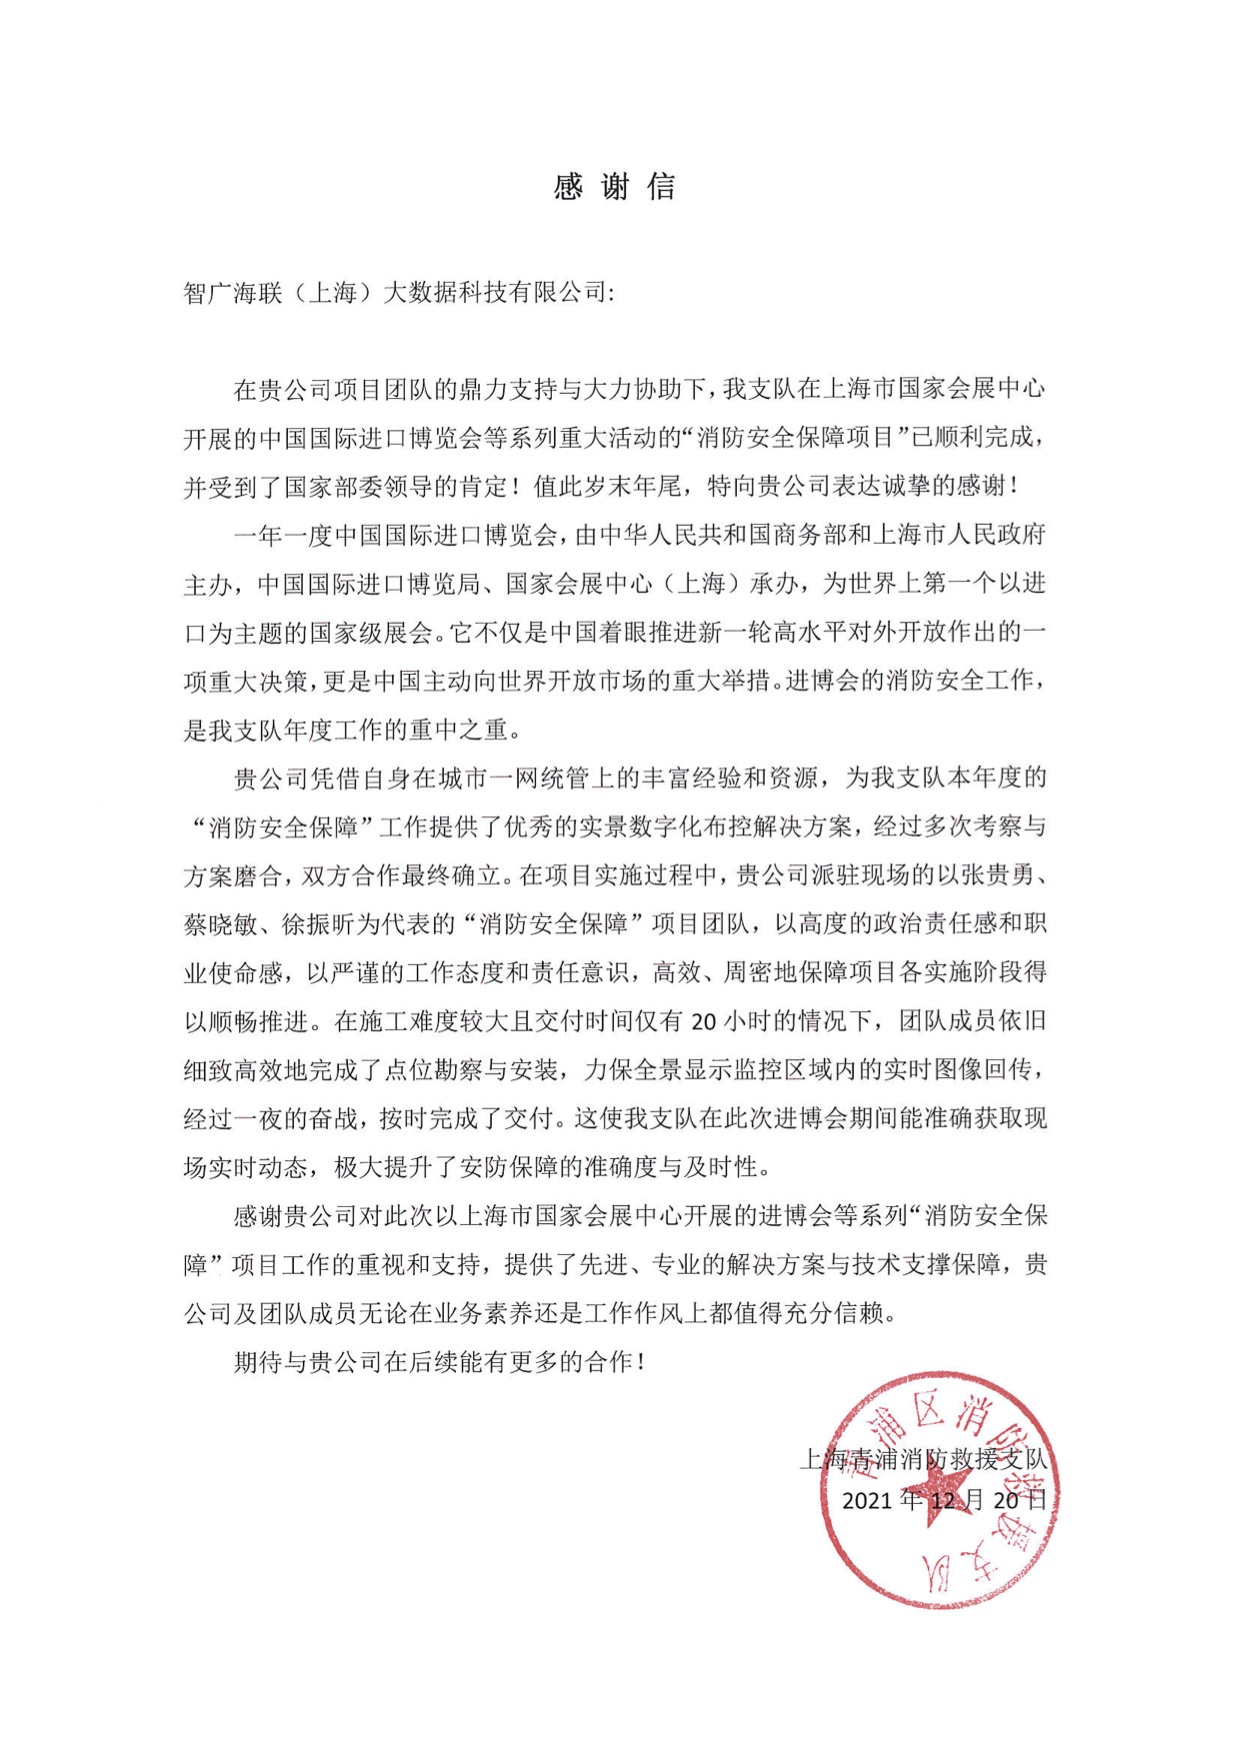 智广海联实景数字化布控解决方案，助力上海进博会“消防安全保障”工作顺利完成